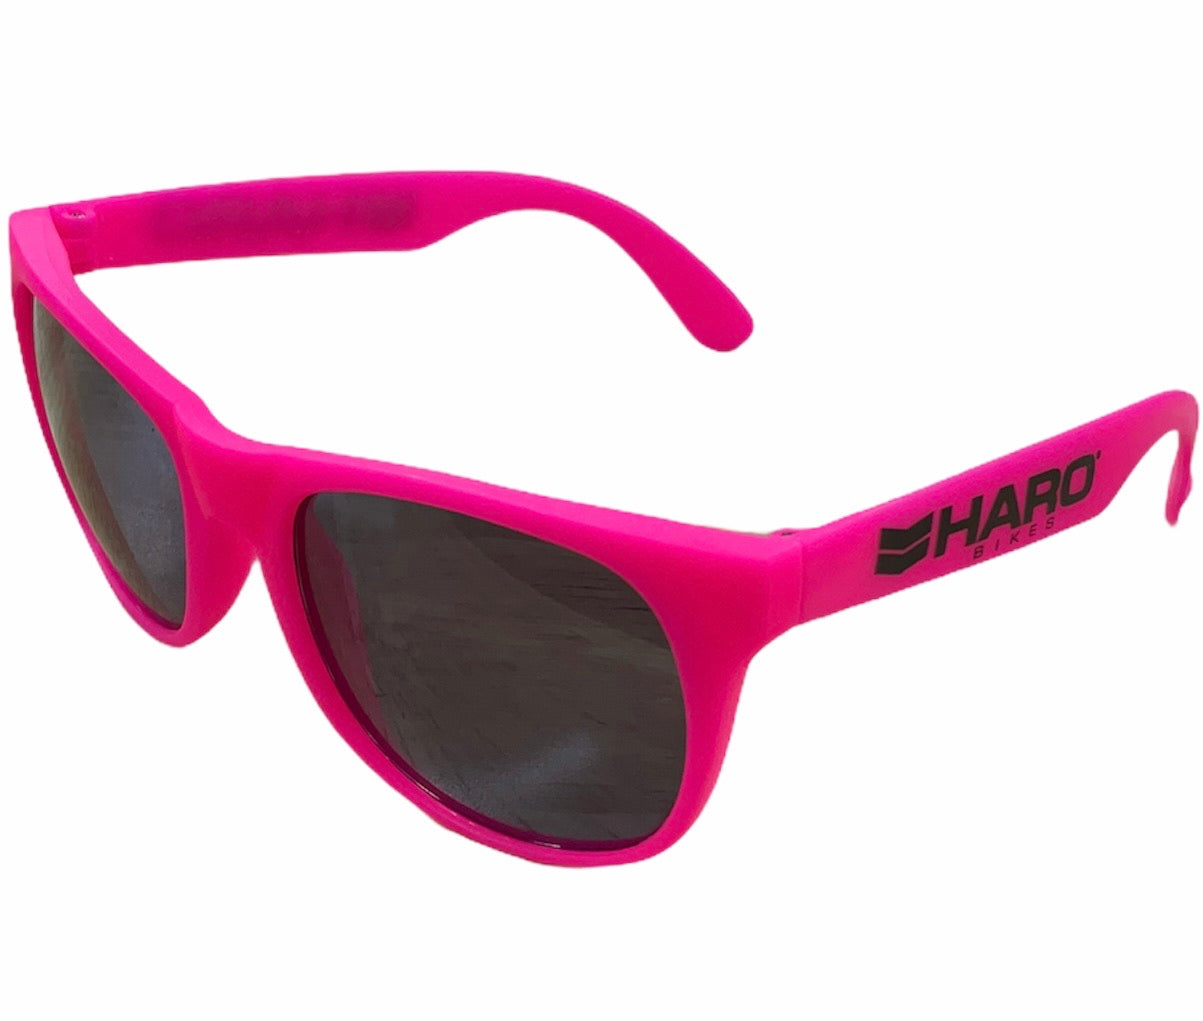 Haro Sunglasses